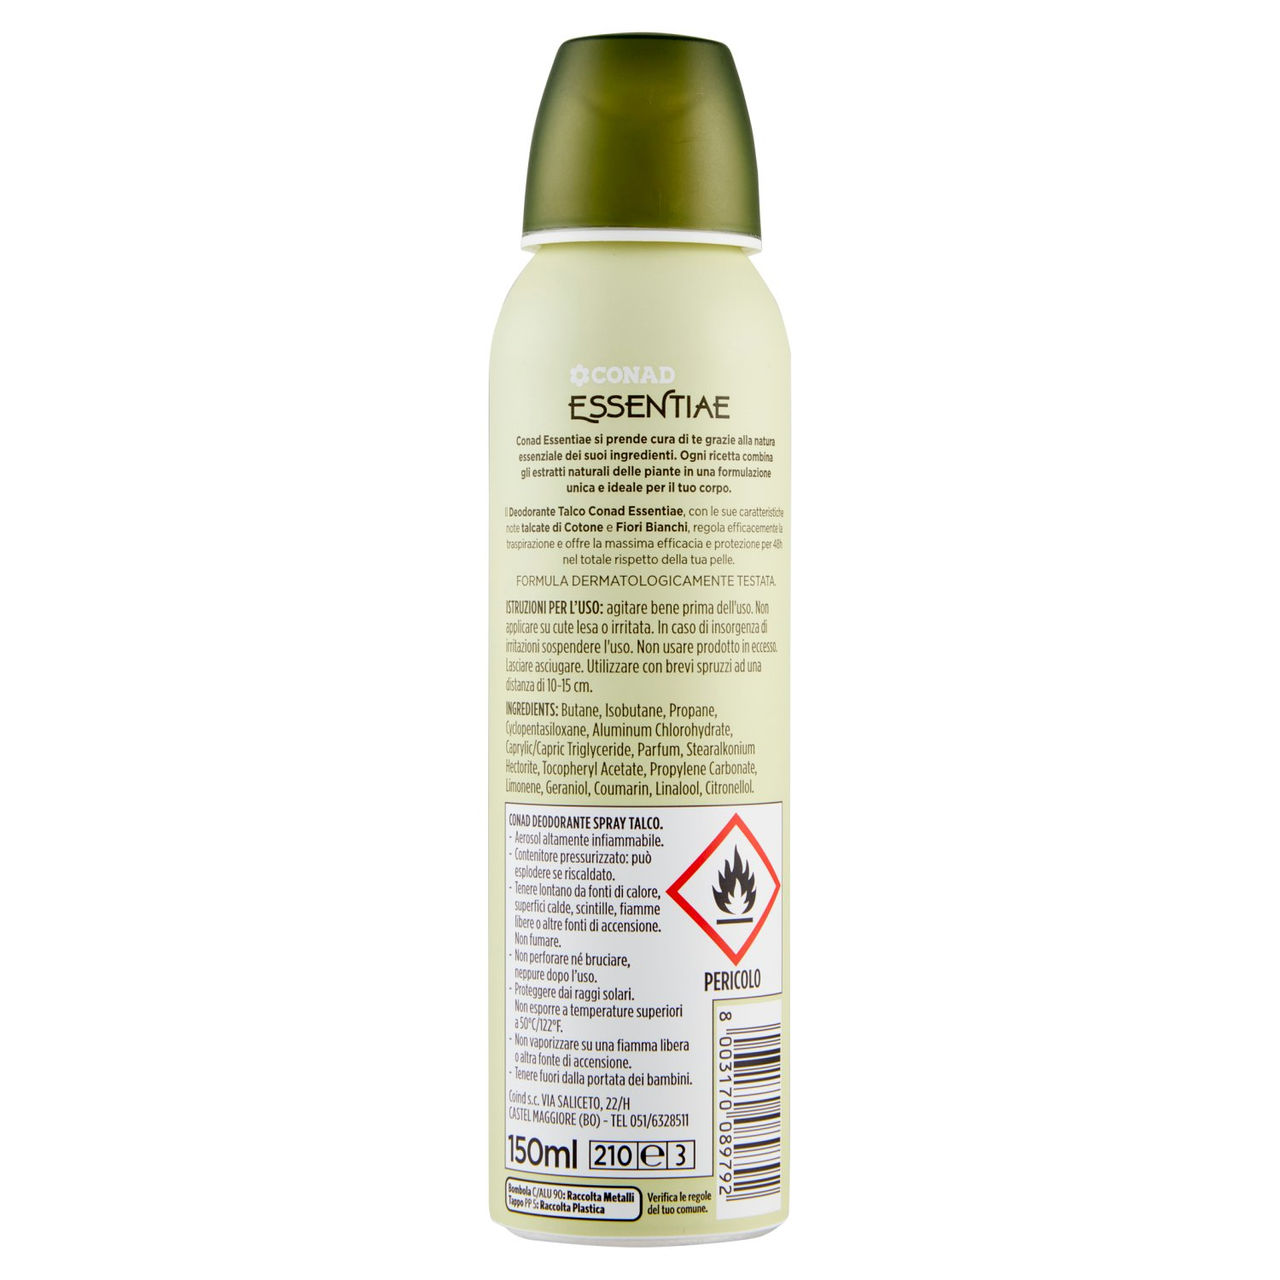 Deodorante spray al talco Conad in vendita online